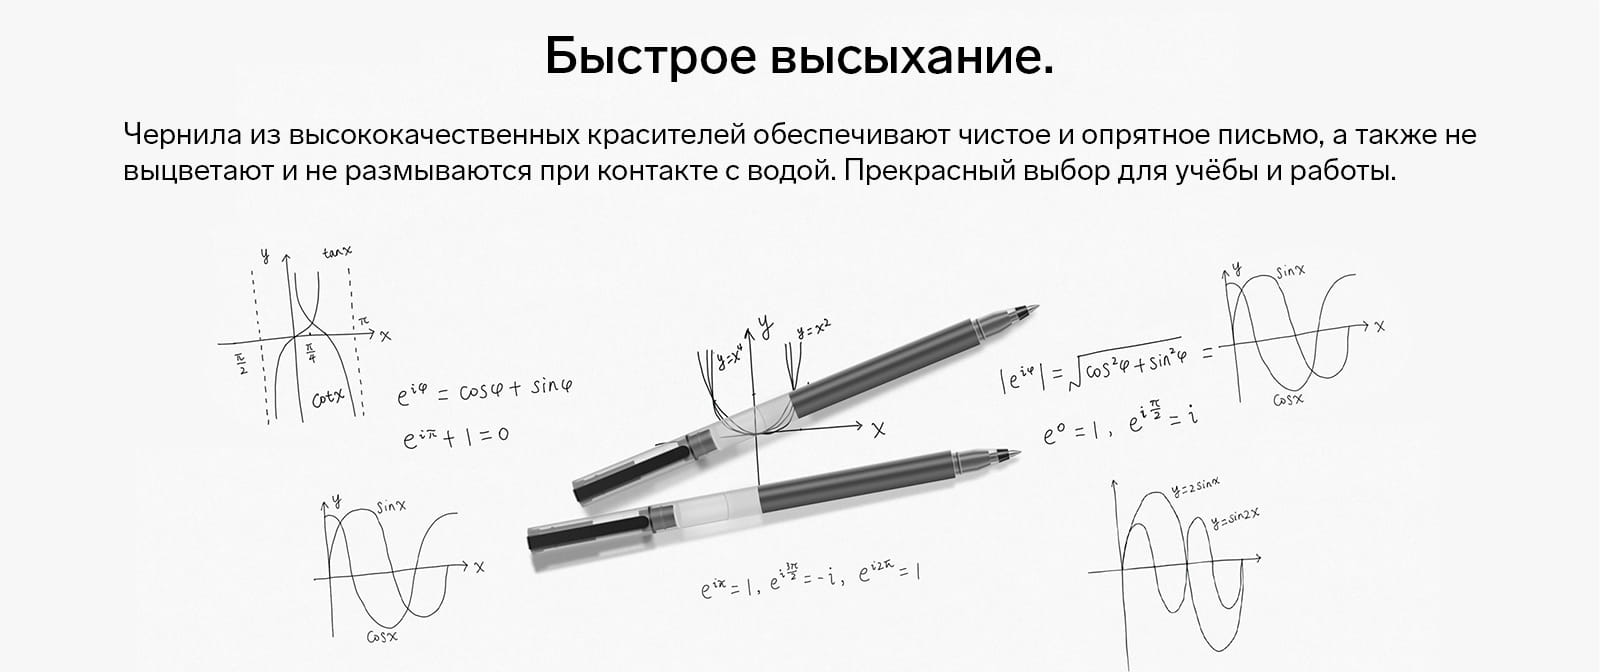 Ручка Mi High-capacity Ink Pen Быстрое высыхание